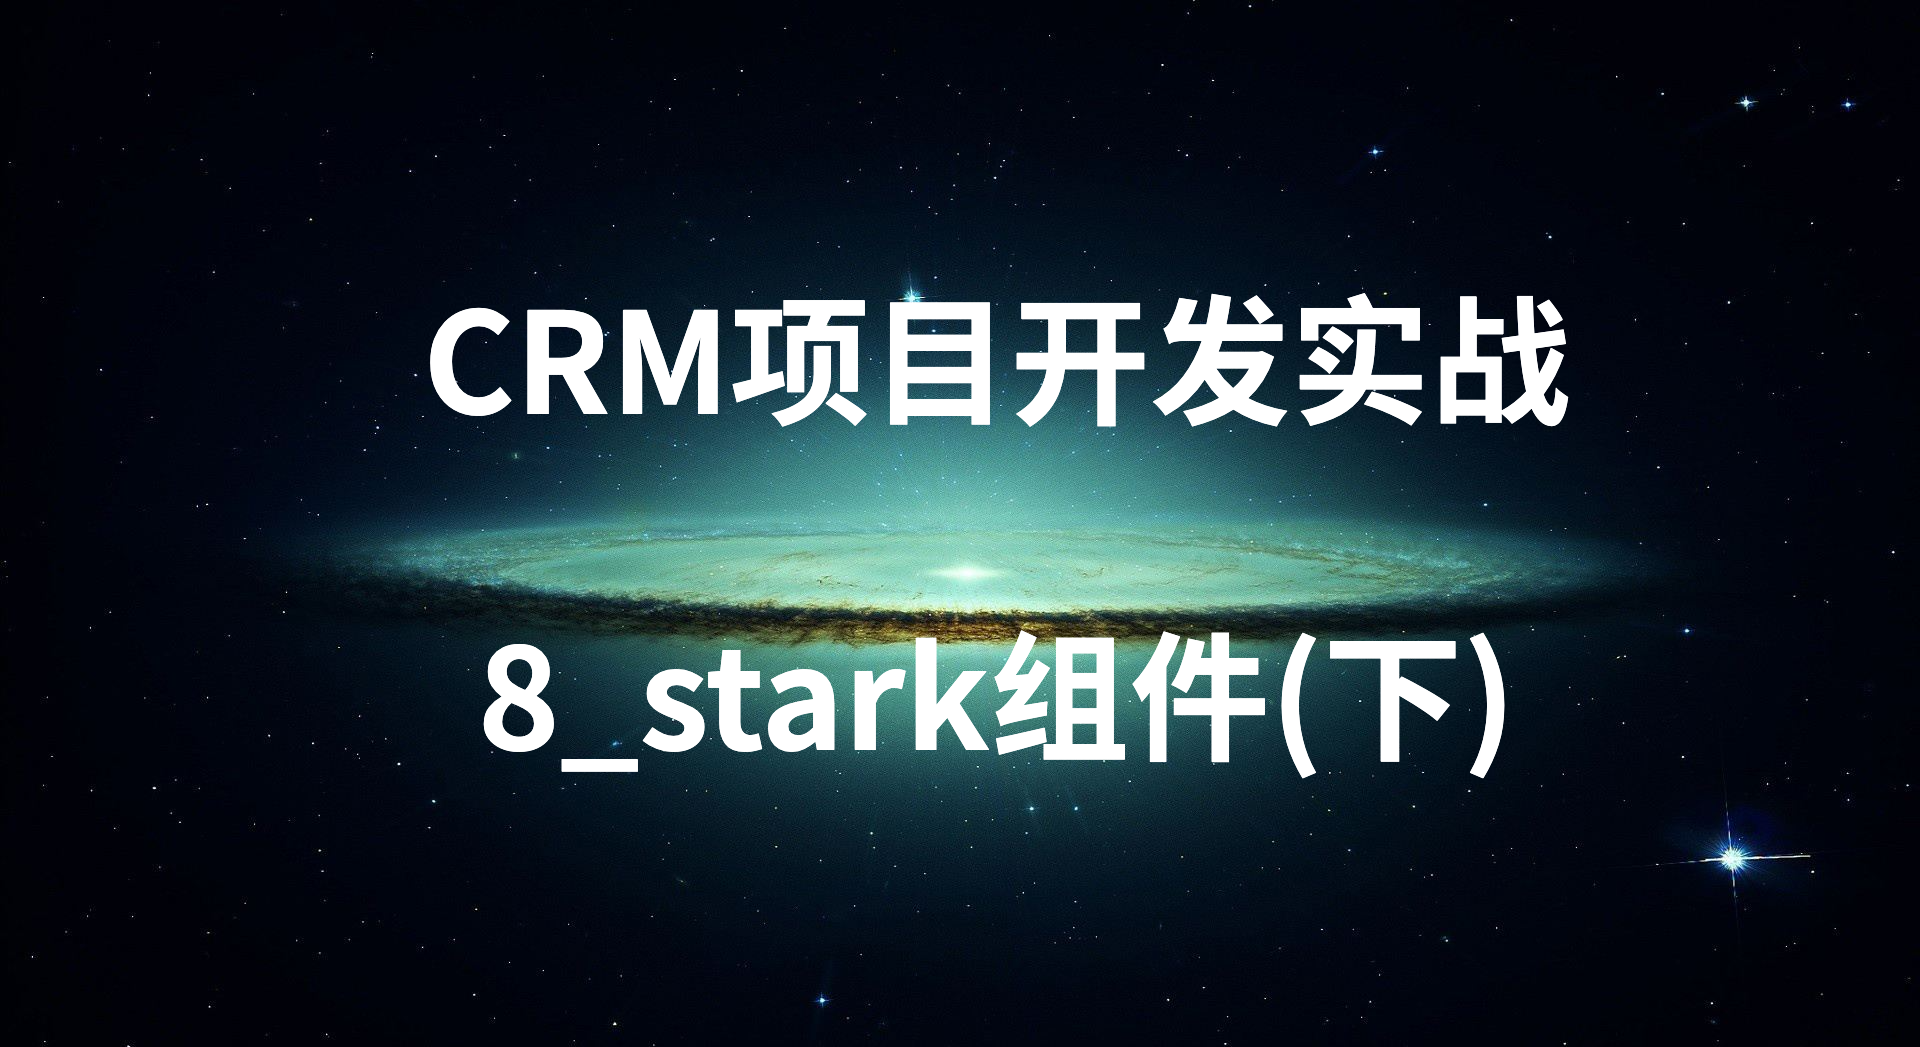 CRM项目开发实战-8_stark组件(下)